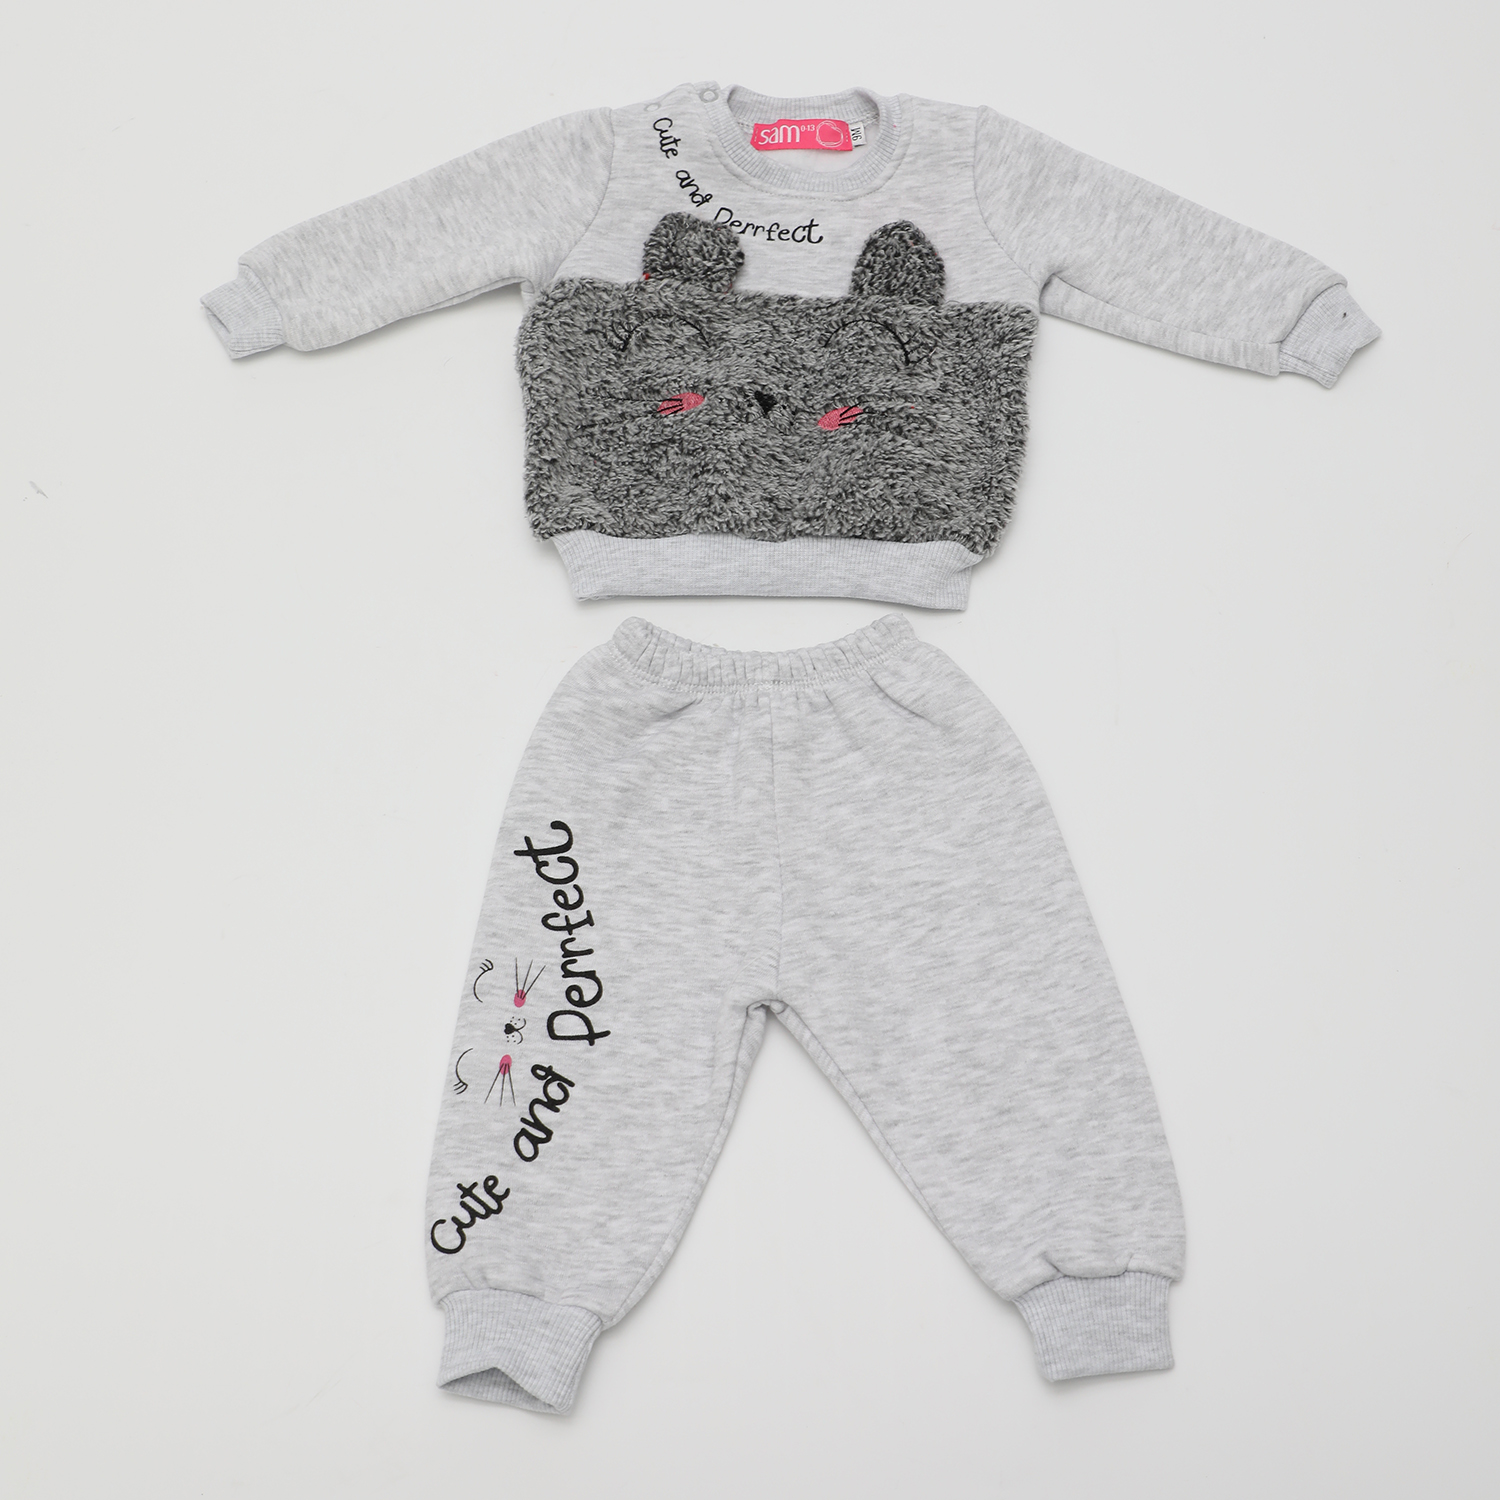 Παιδικά/Baby/Ρούχα/Σετ SAM 0-13 - Βρεφικό σετ φόρμας SAM 0-13 ΣΕΤ CUTE AND PERFECT γκρι